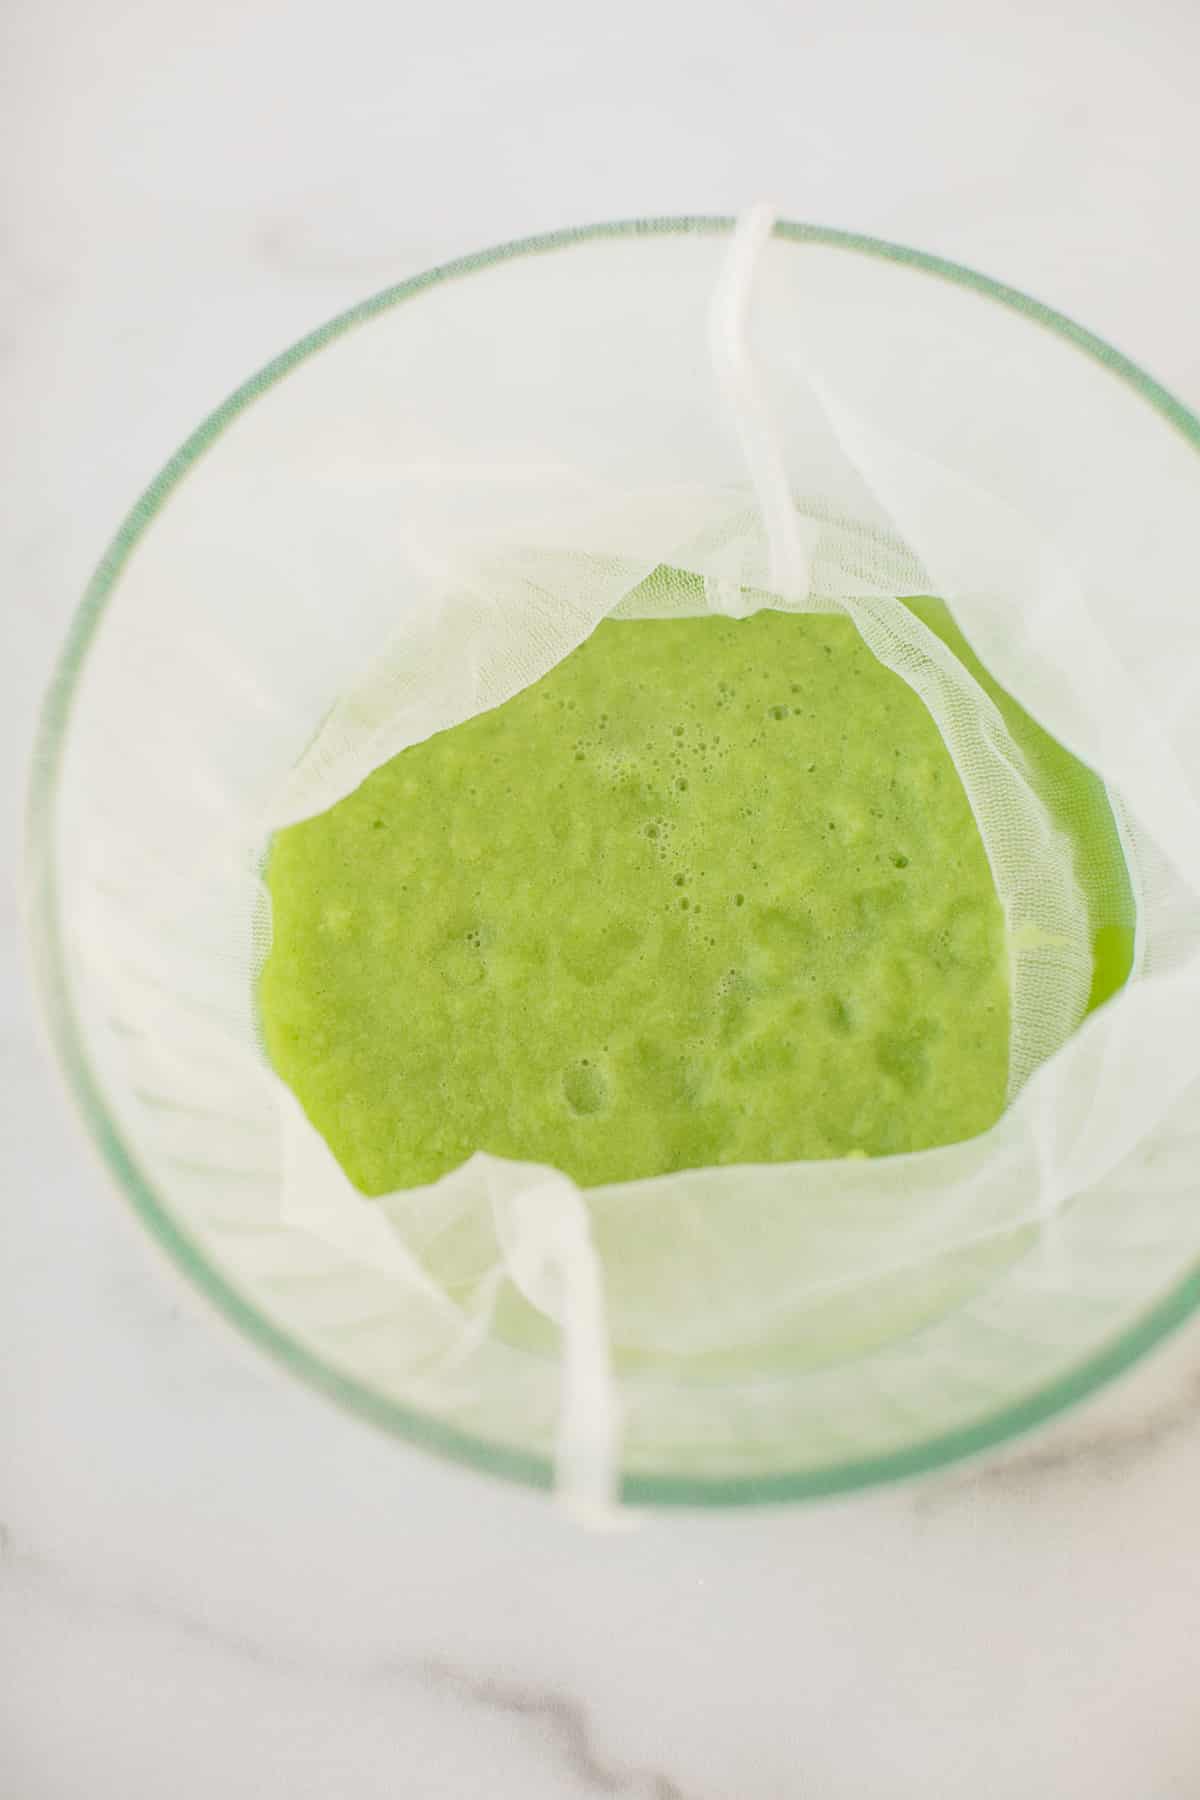 blended celery juice in a nut milk bag.